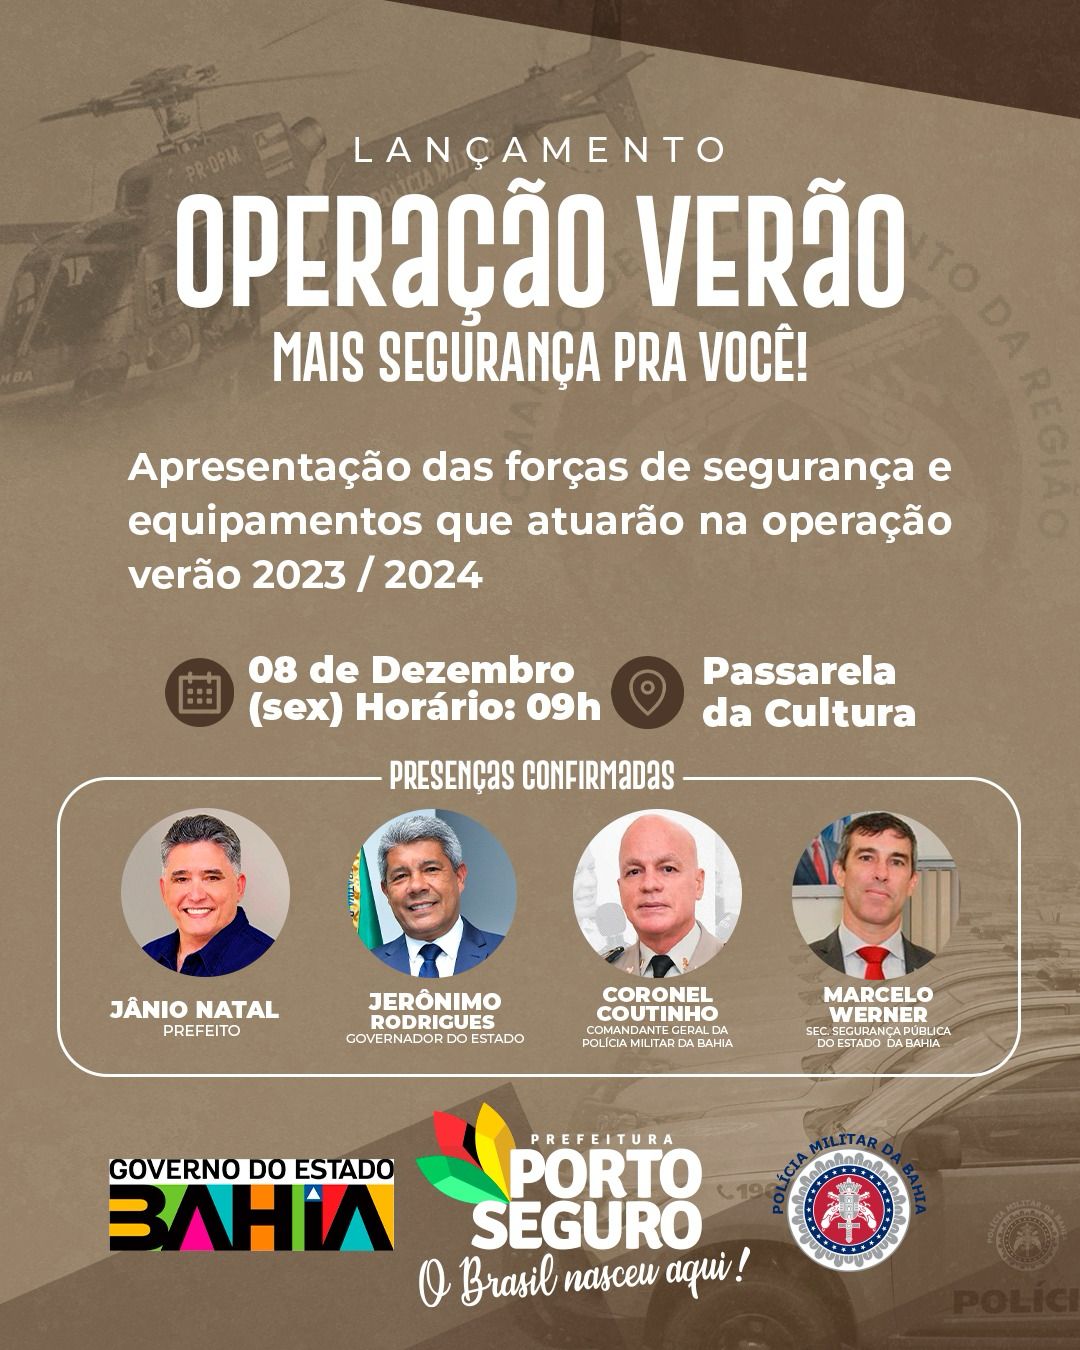 Operação Verão do Estado da Bahia será lançada em Porto Seguro nesta sexta-feira 5